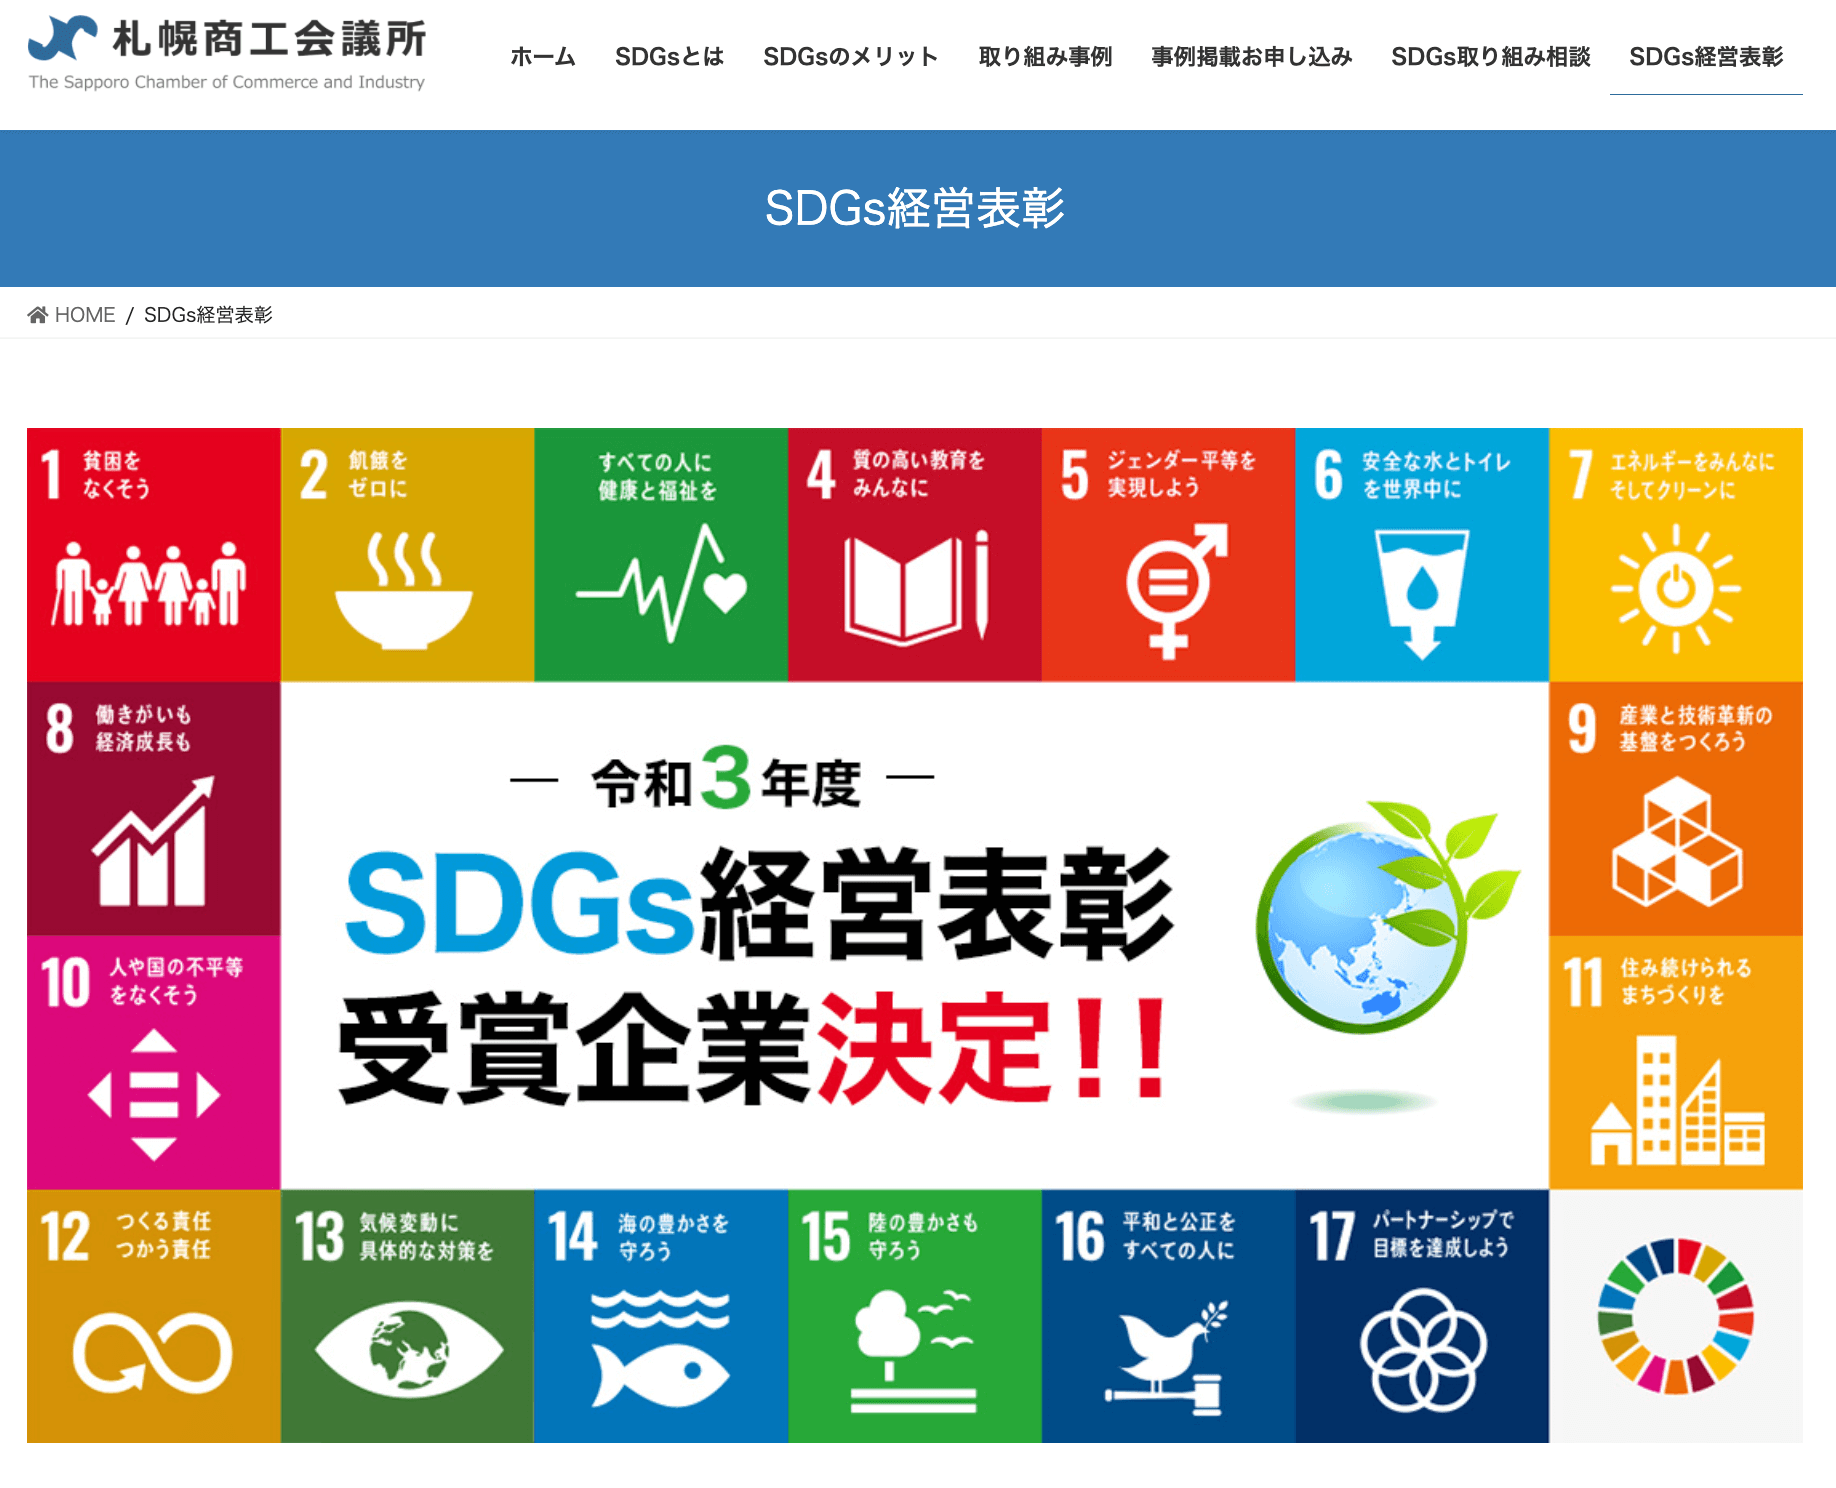 SDGs経営表彰